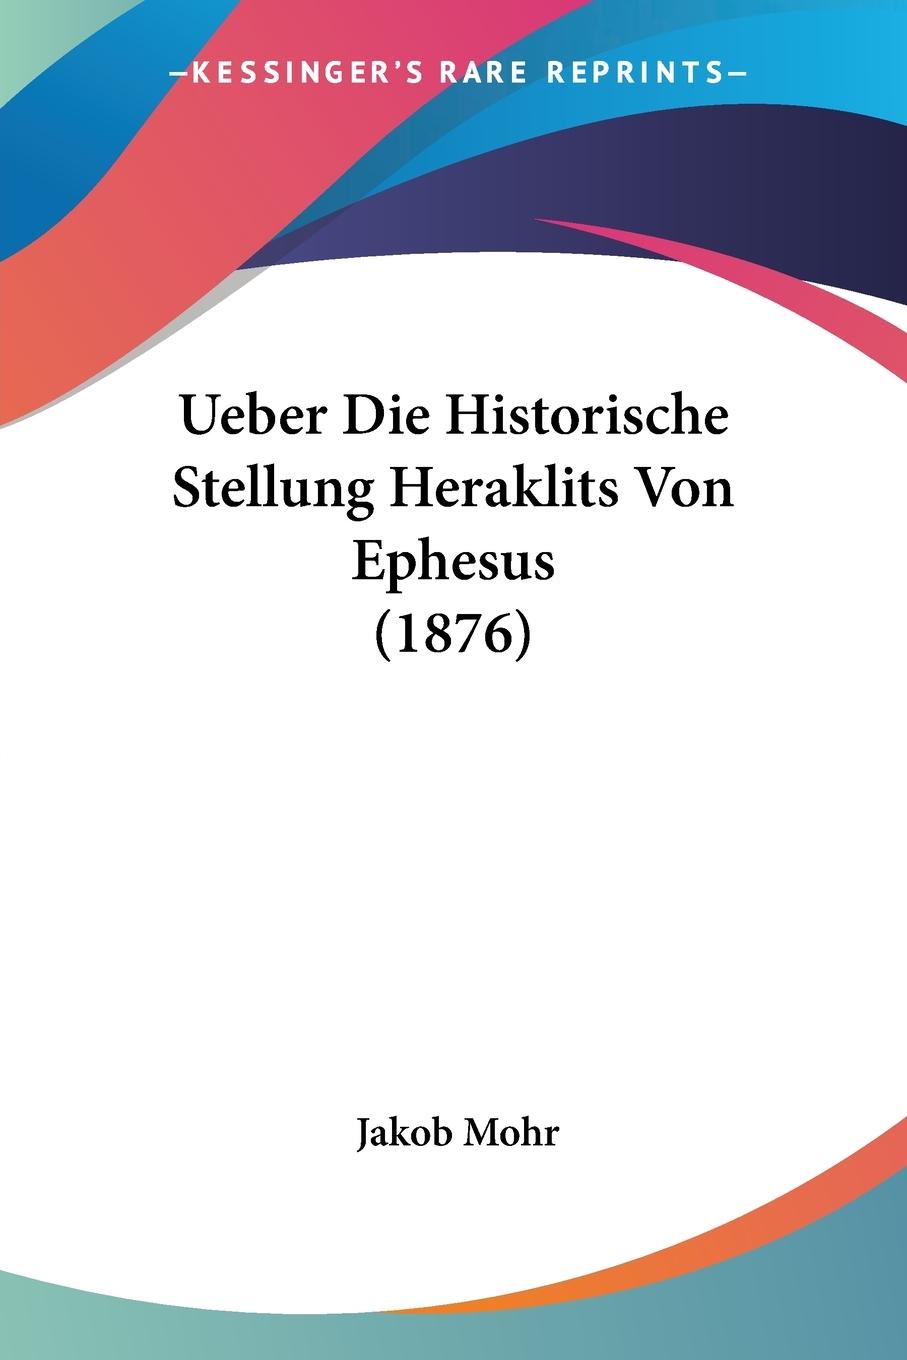 Ueber Die Historische Stellung Heraklits Von Ephesus (1876) - Mohr, Jakob